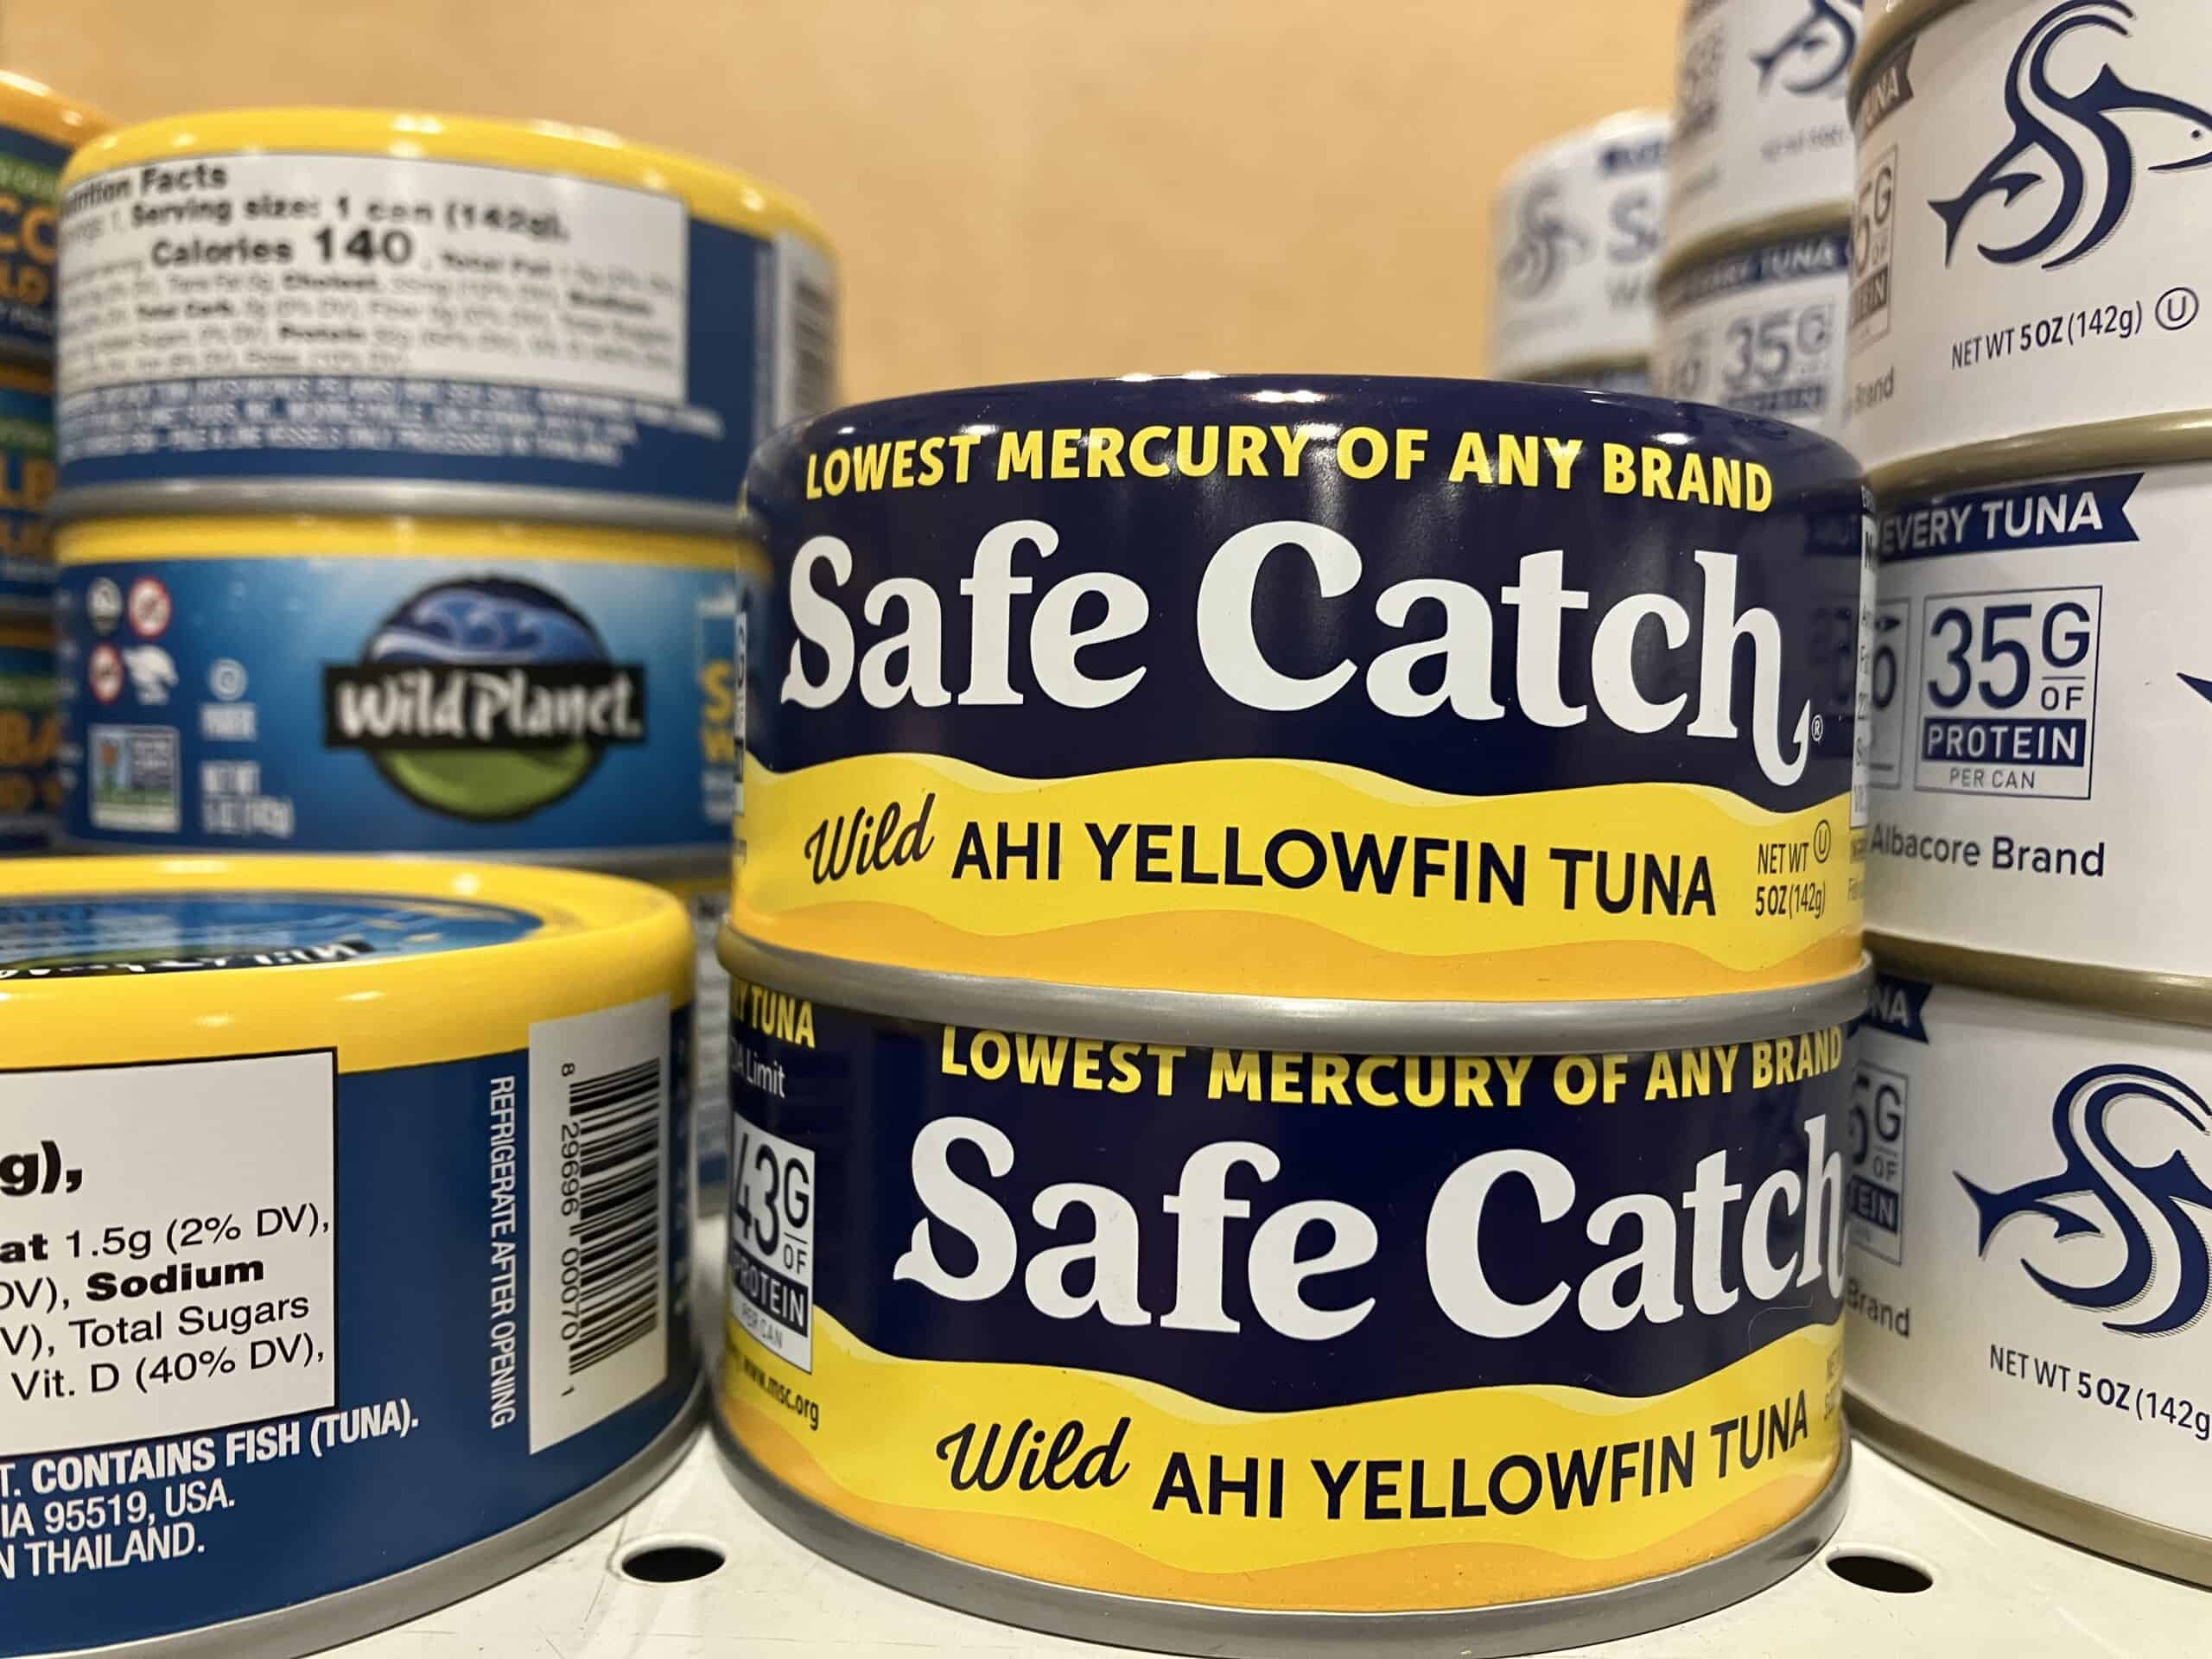 Safe Catch ahi yellowfin tuna